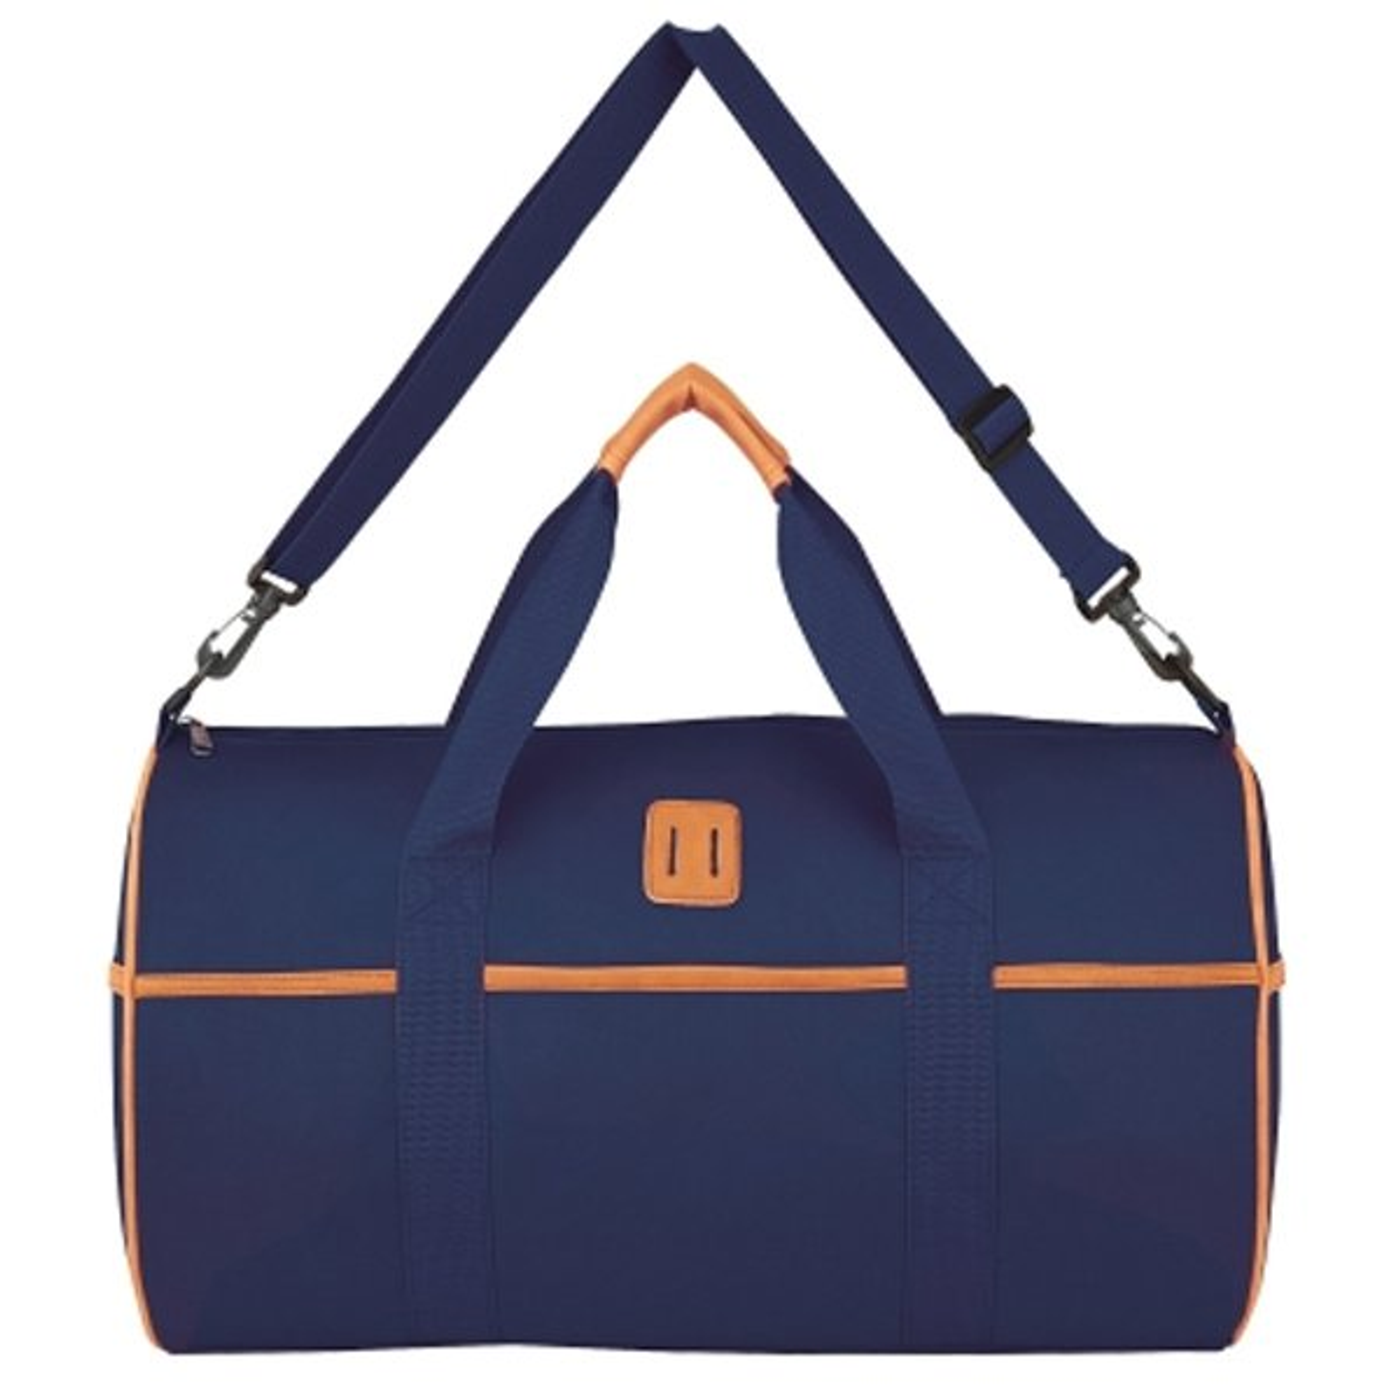 Designer Nomad Duffel Bags | Customtattoonow.Com | CustomTattooNow.com ...